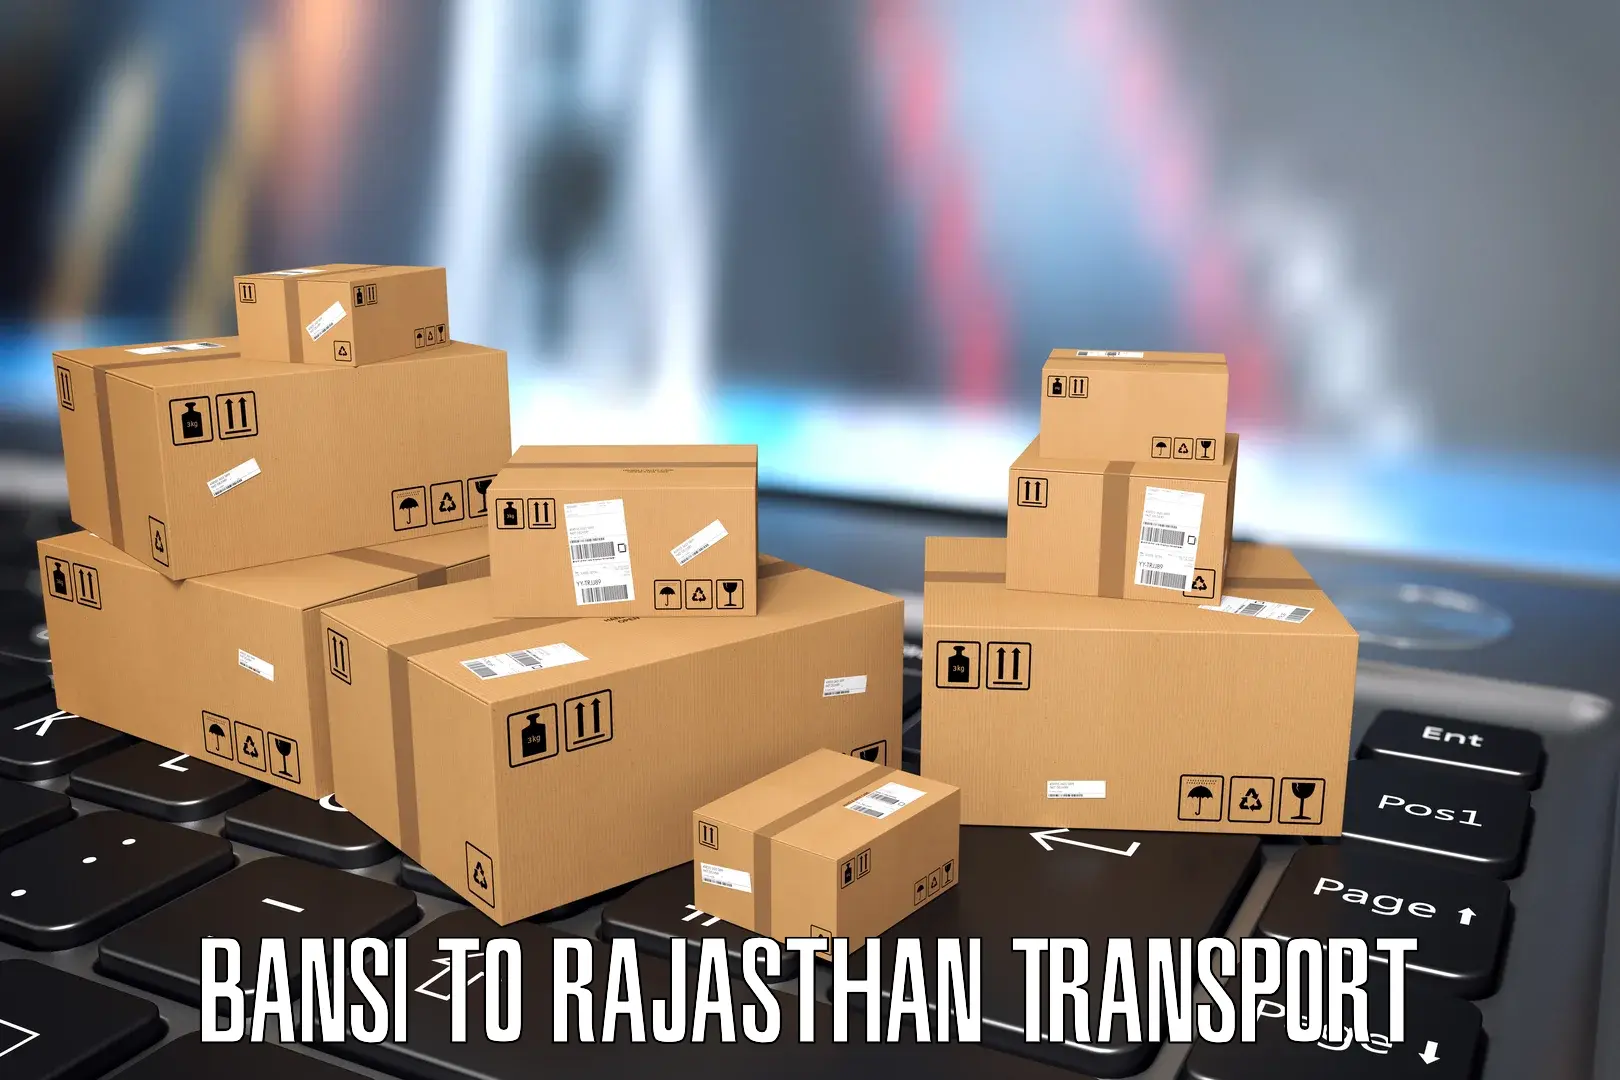 Daily parcel service transport Bansi to Alwar